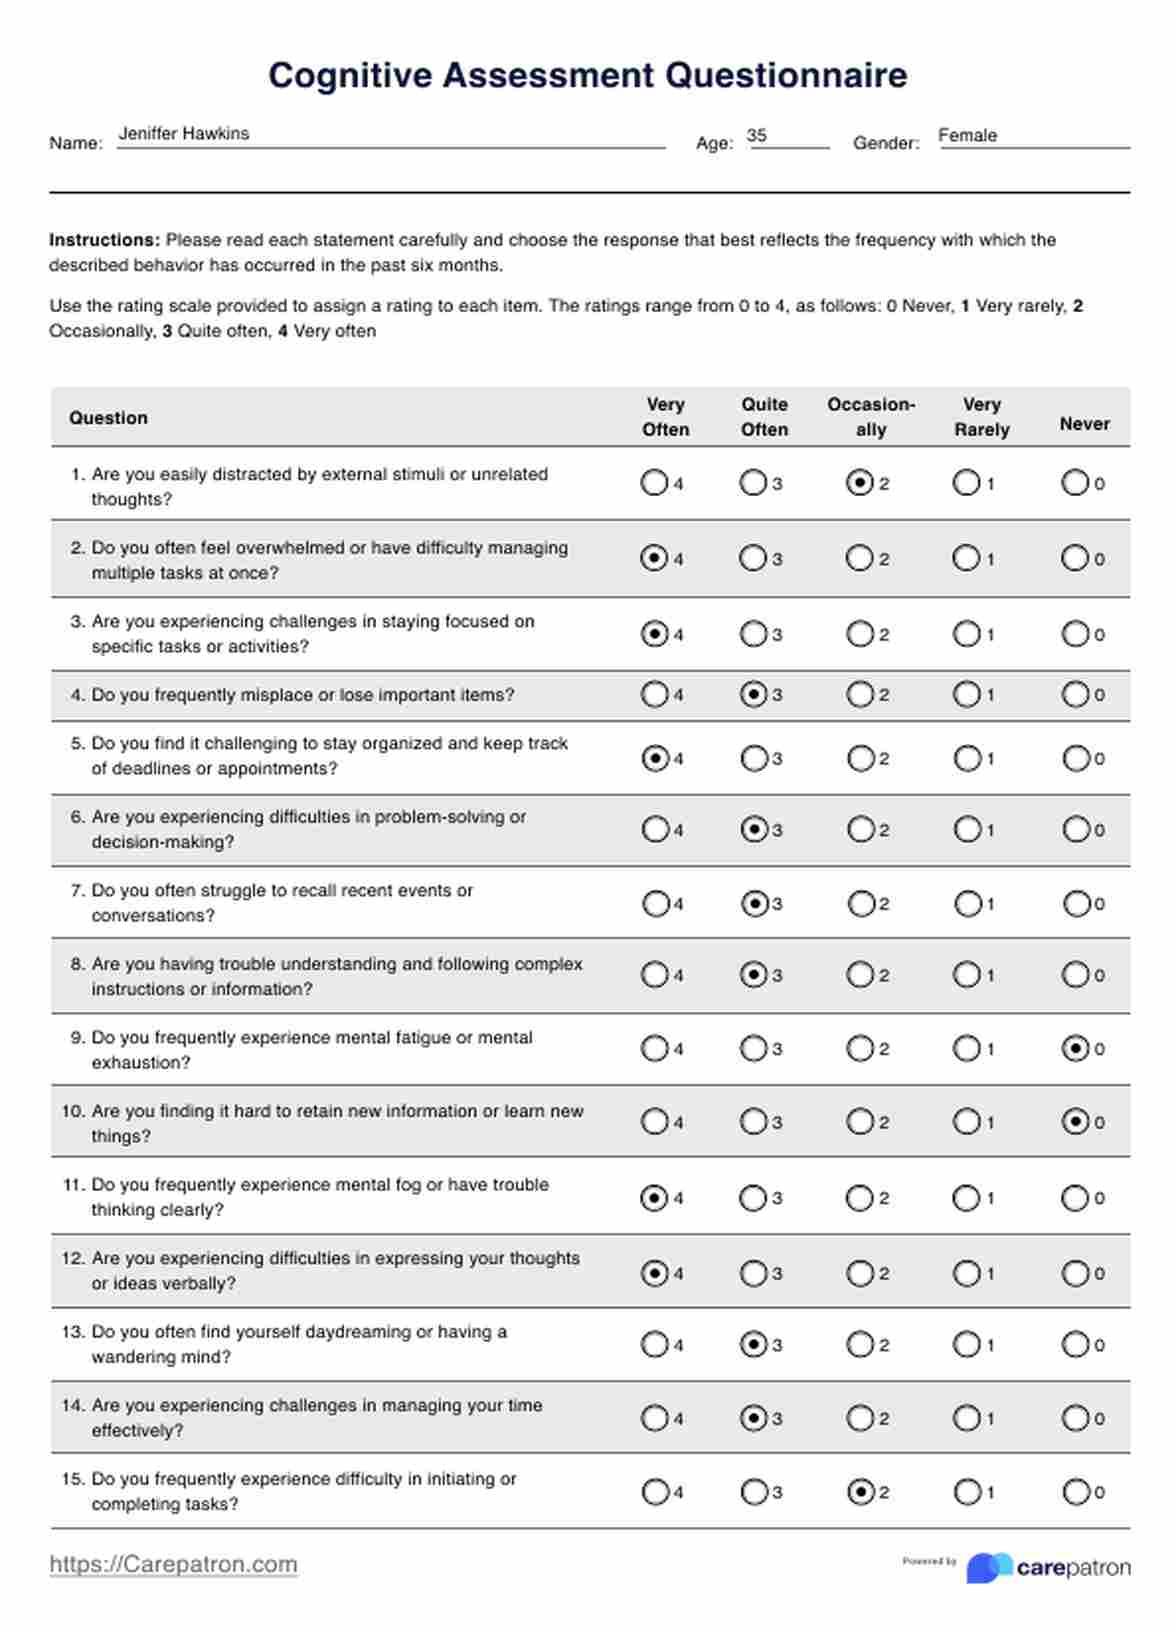 Cognitive Assessment Questionnaire PDF Example